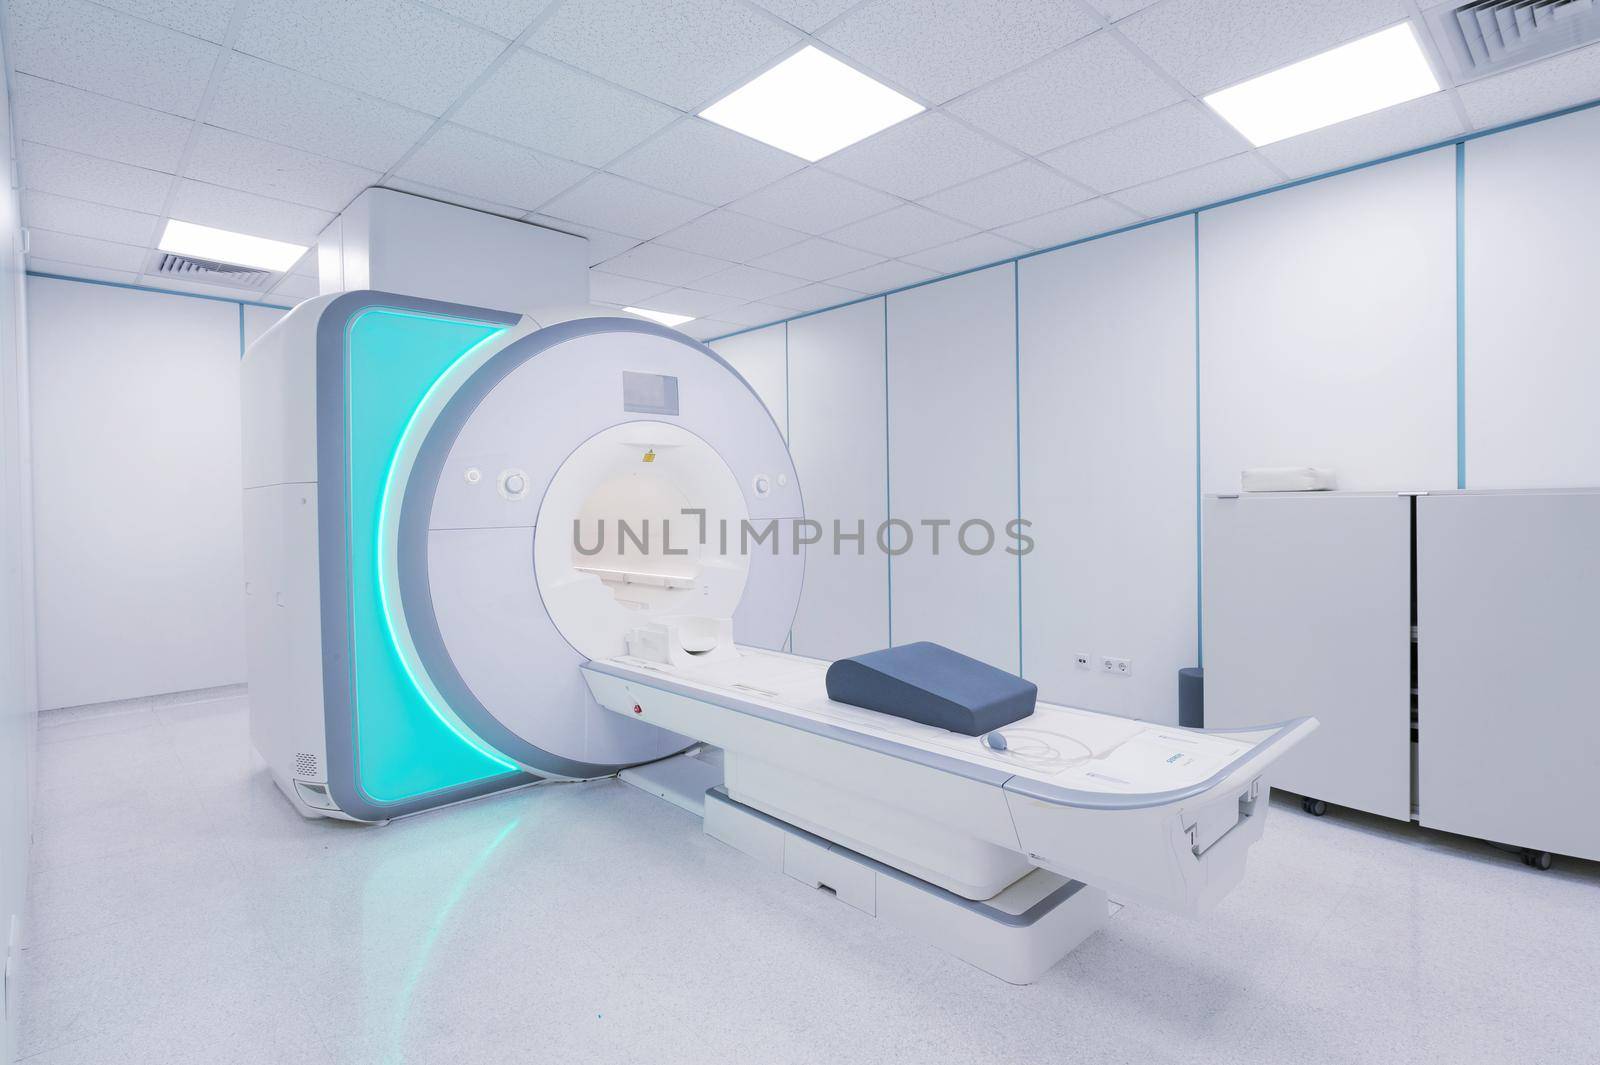 MRI - Magnetic resonance imaging scan device by kaliantye